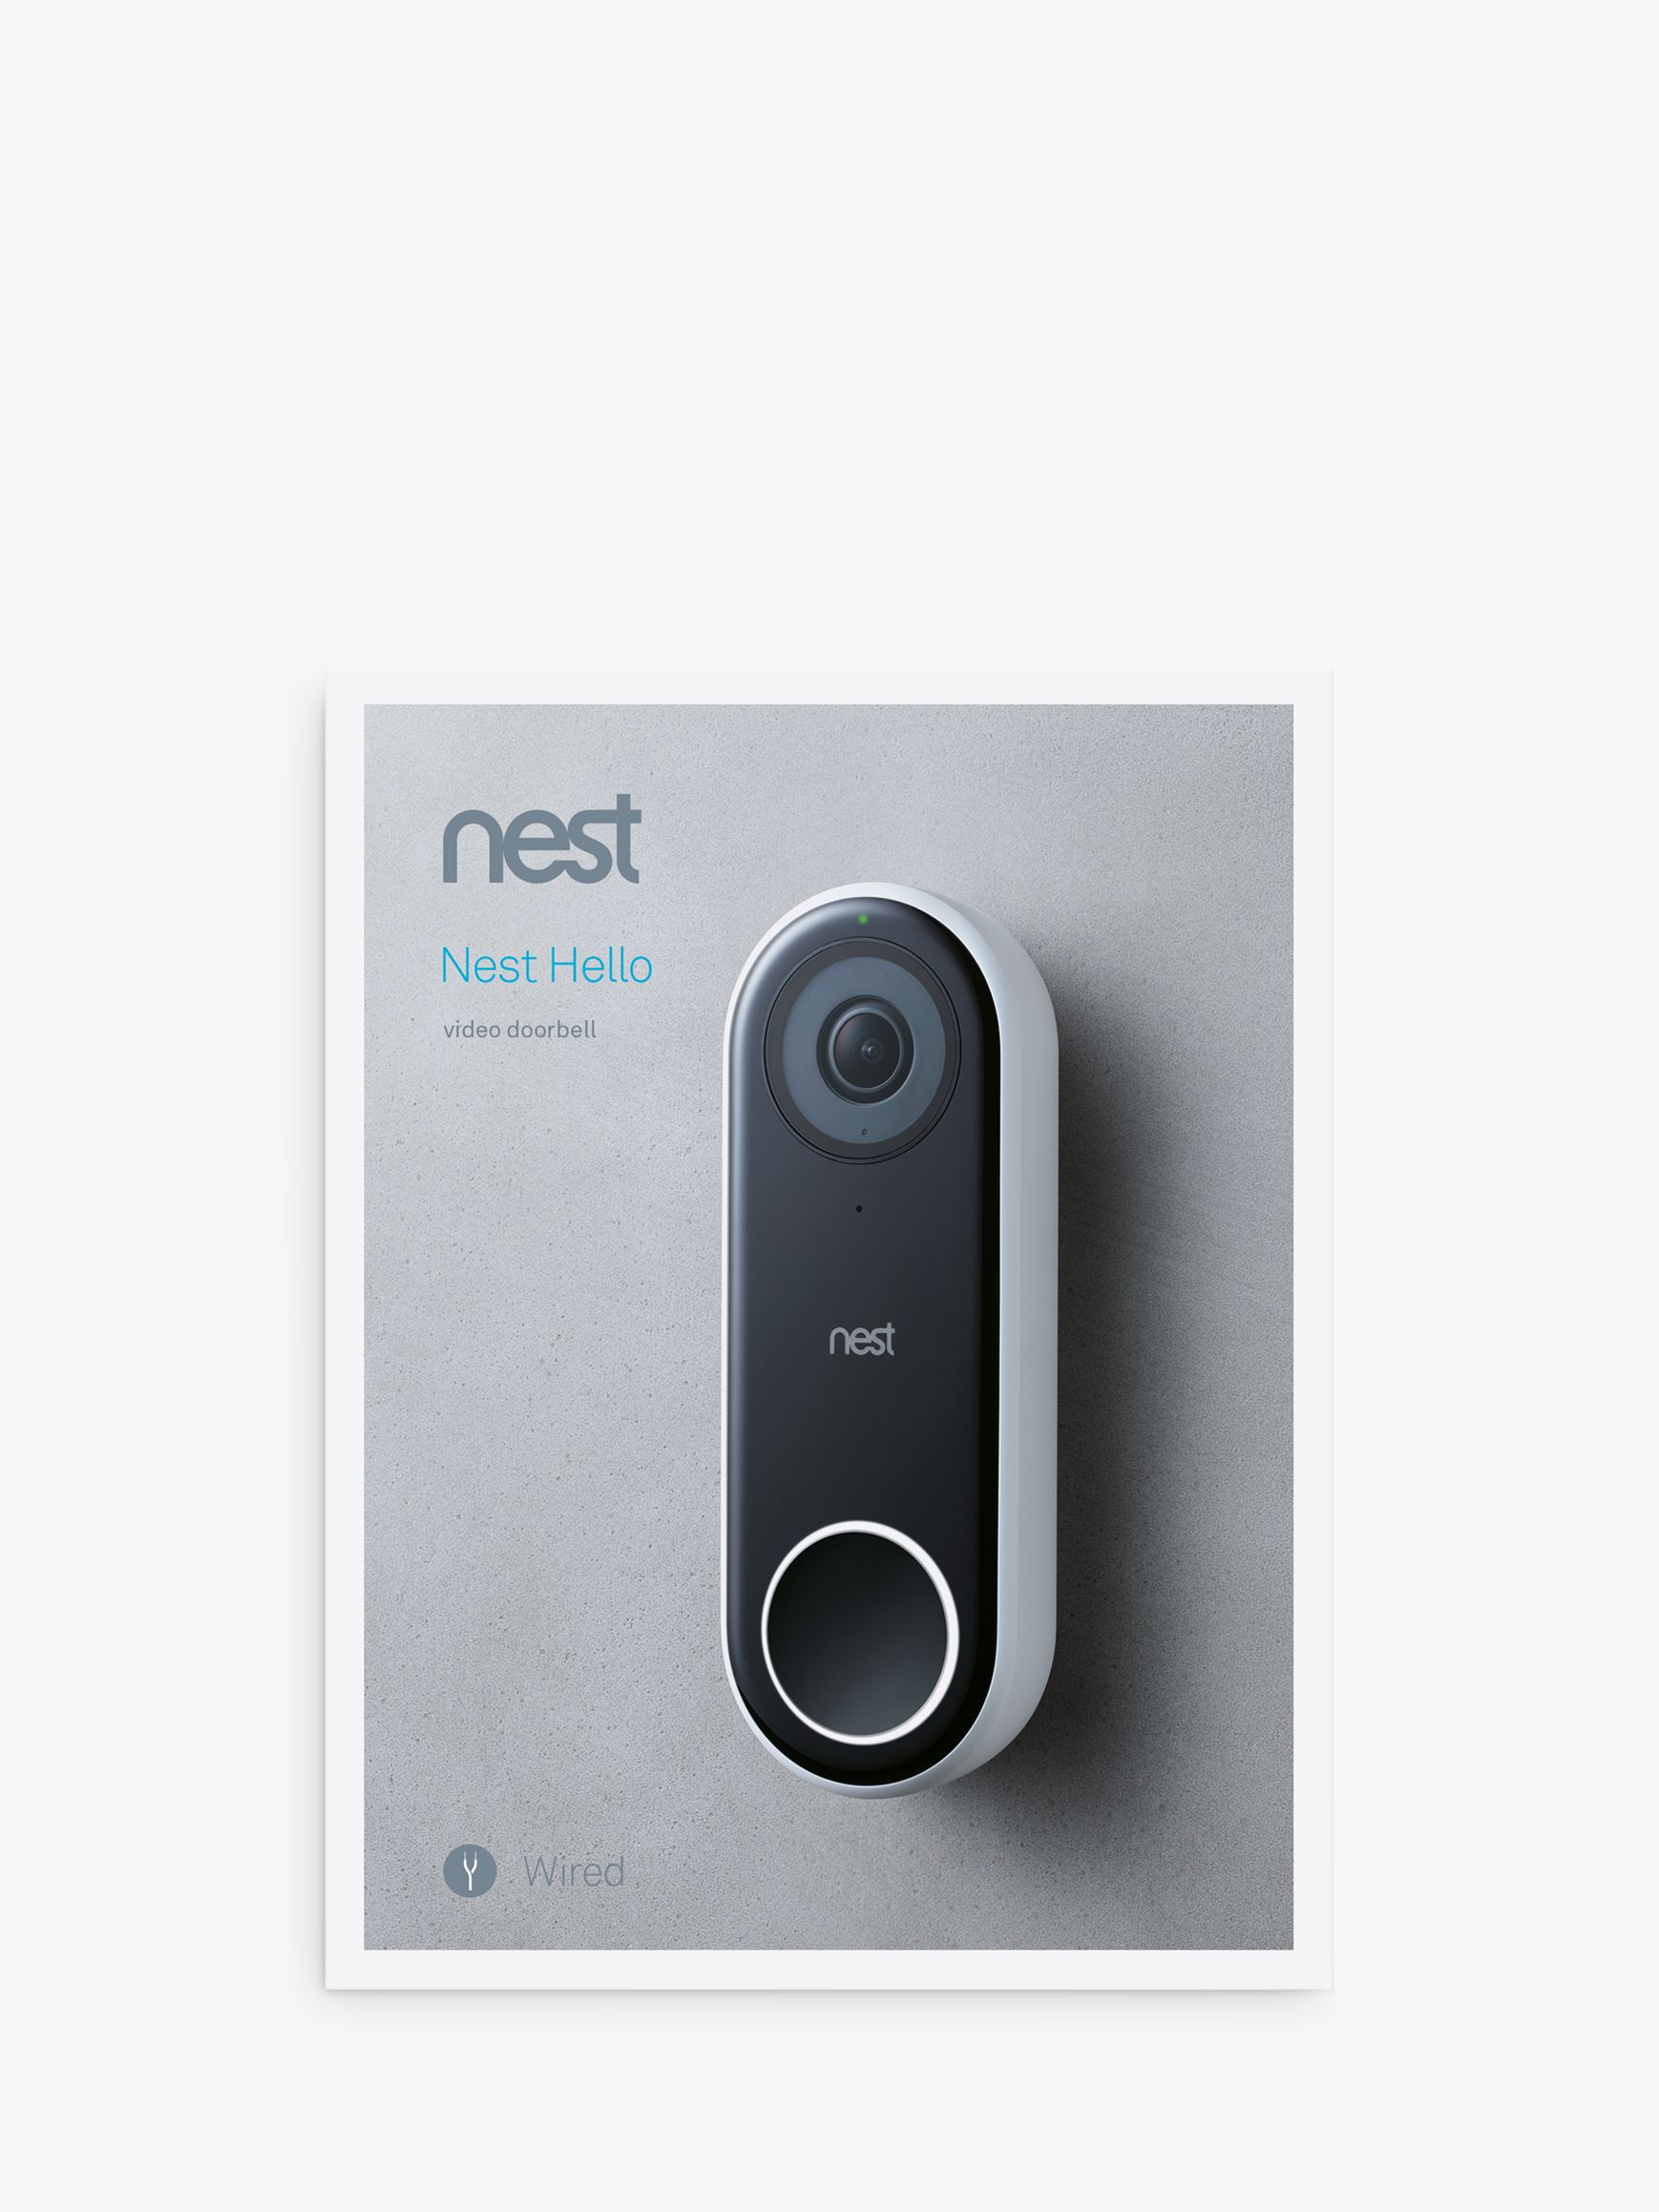 nest doorbell camera not working